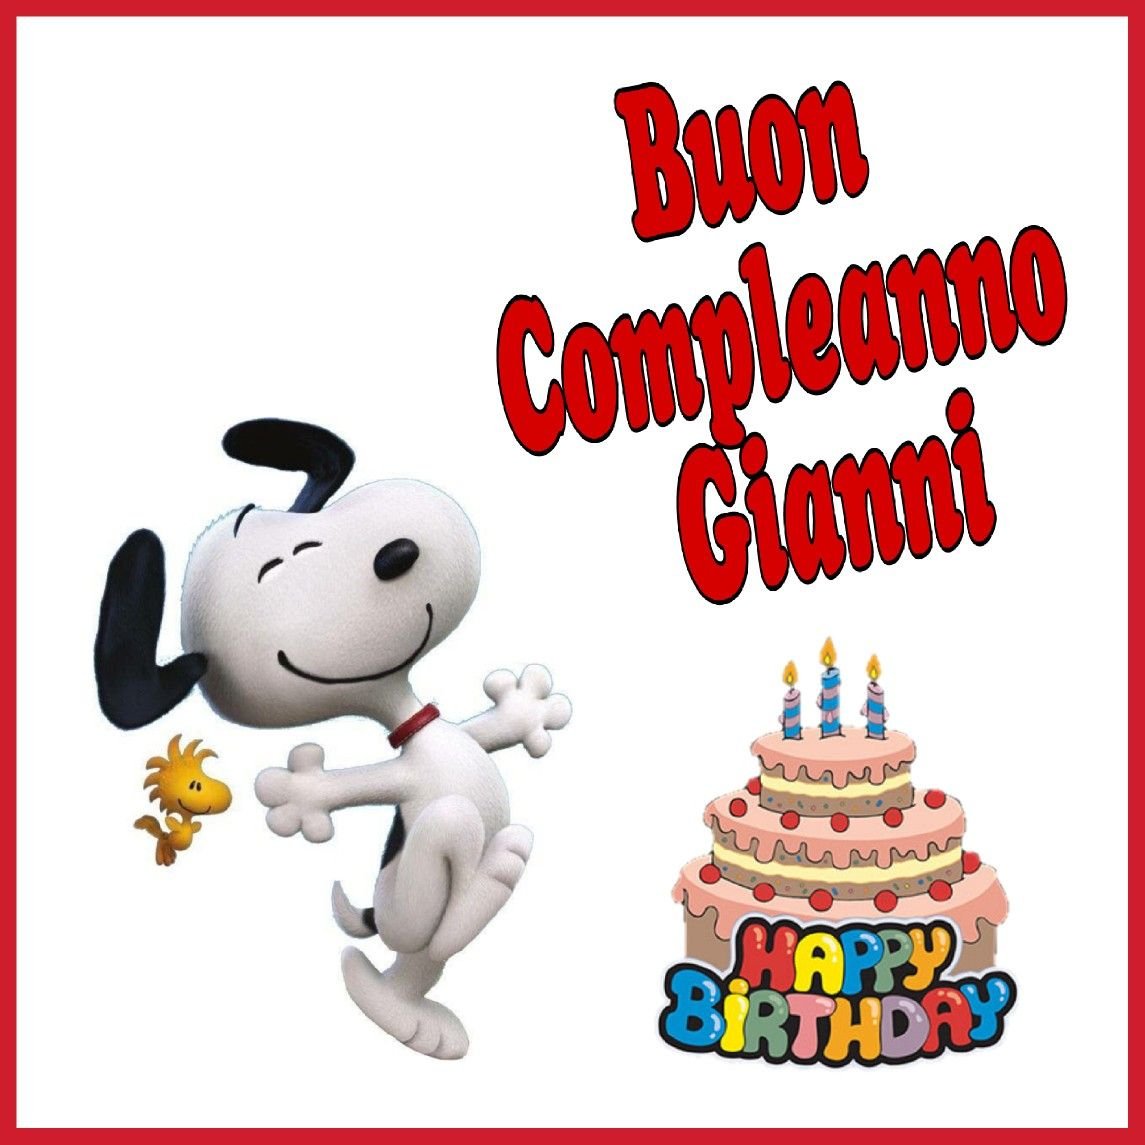 Поздравления с днем рождения на итальянском языке. Buon compleanno открытки. С днём рождения на итальянском языке. Открытка с днем рождения на итальянском. Поздравления с днём рождения на итальянском языке.